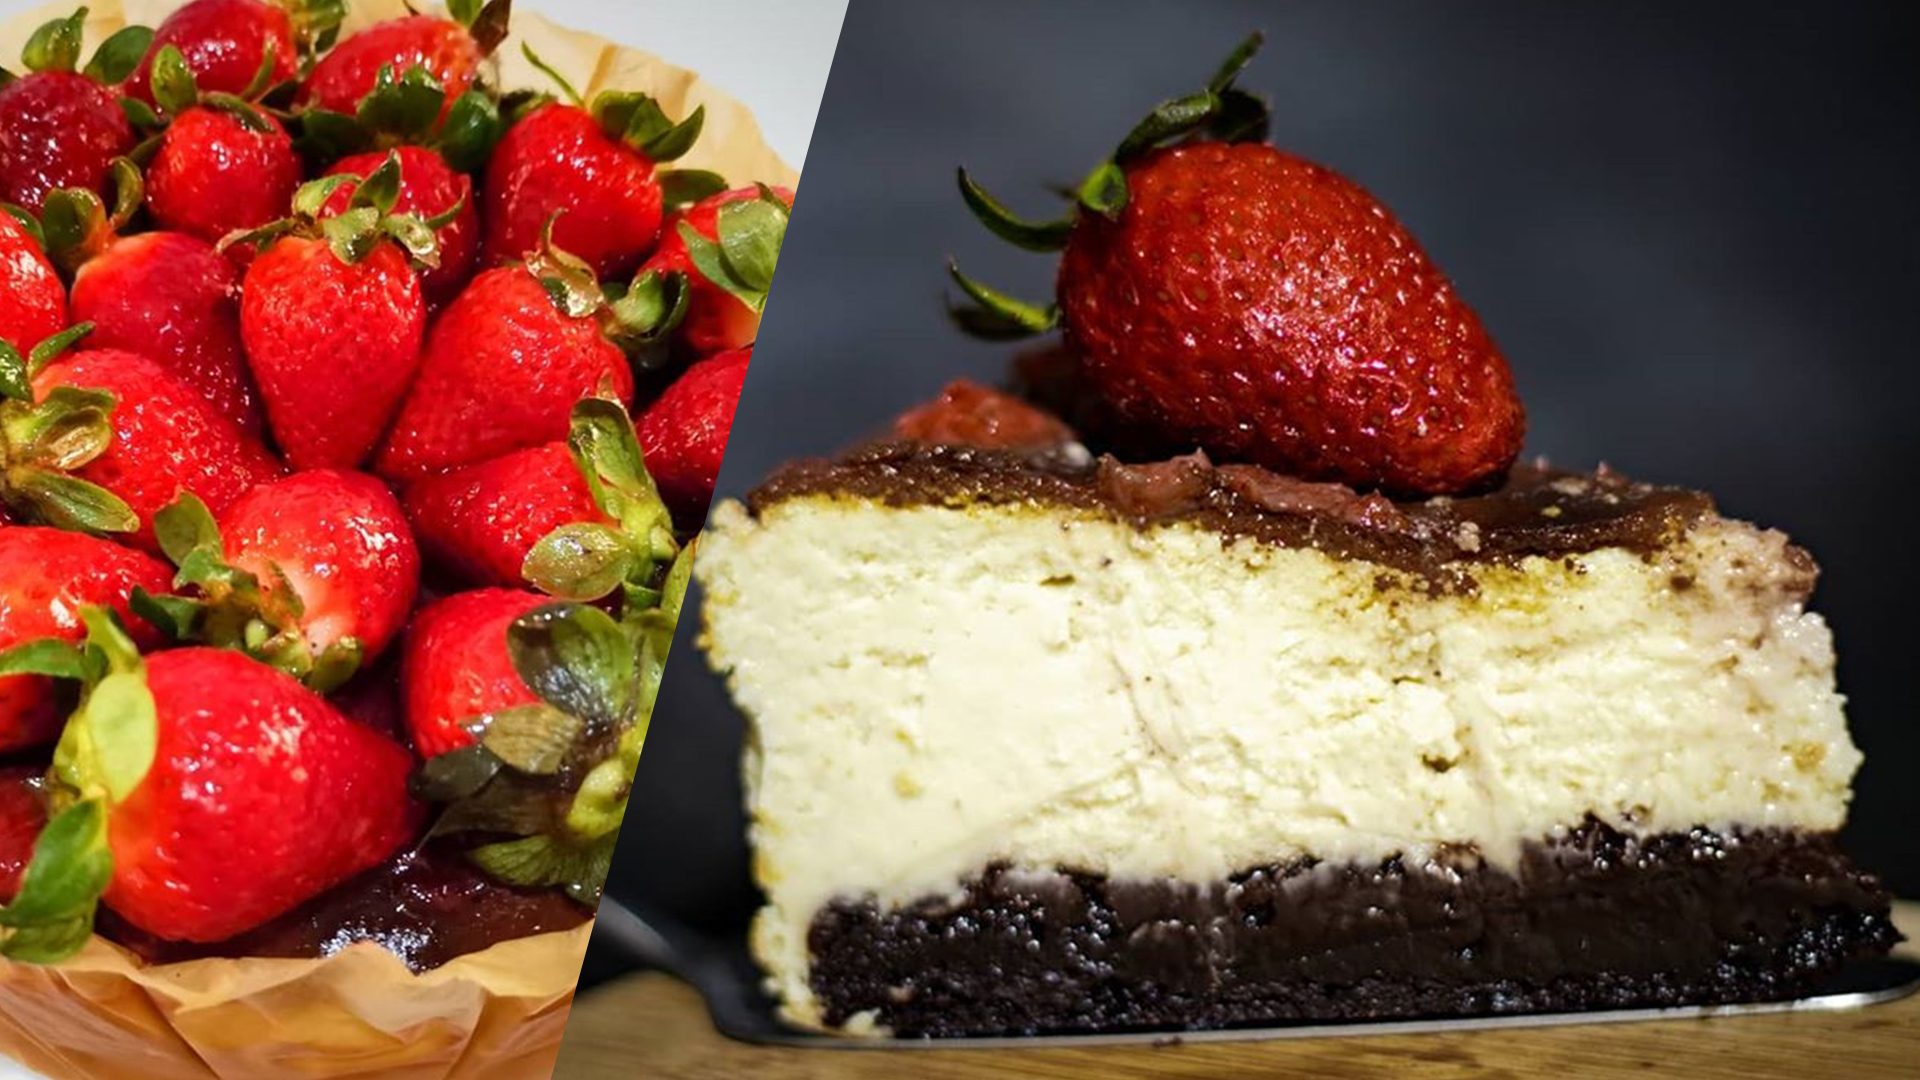 LOOK: Crinkle crust meets burnt basque cheesecake, fresh strawberries